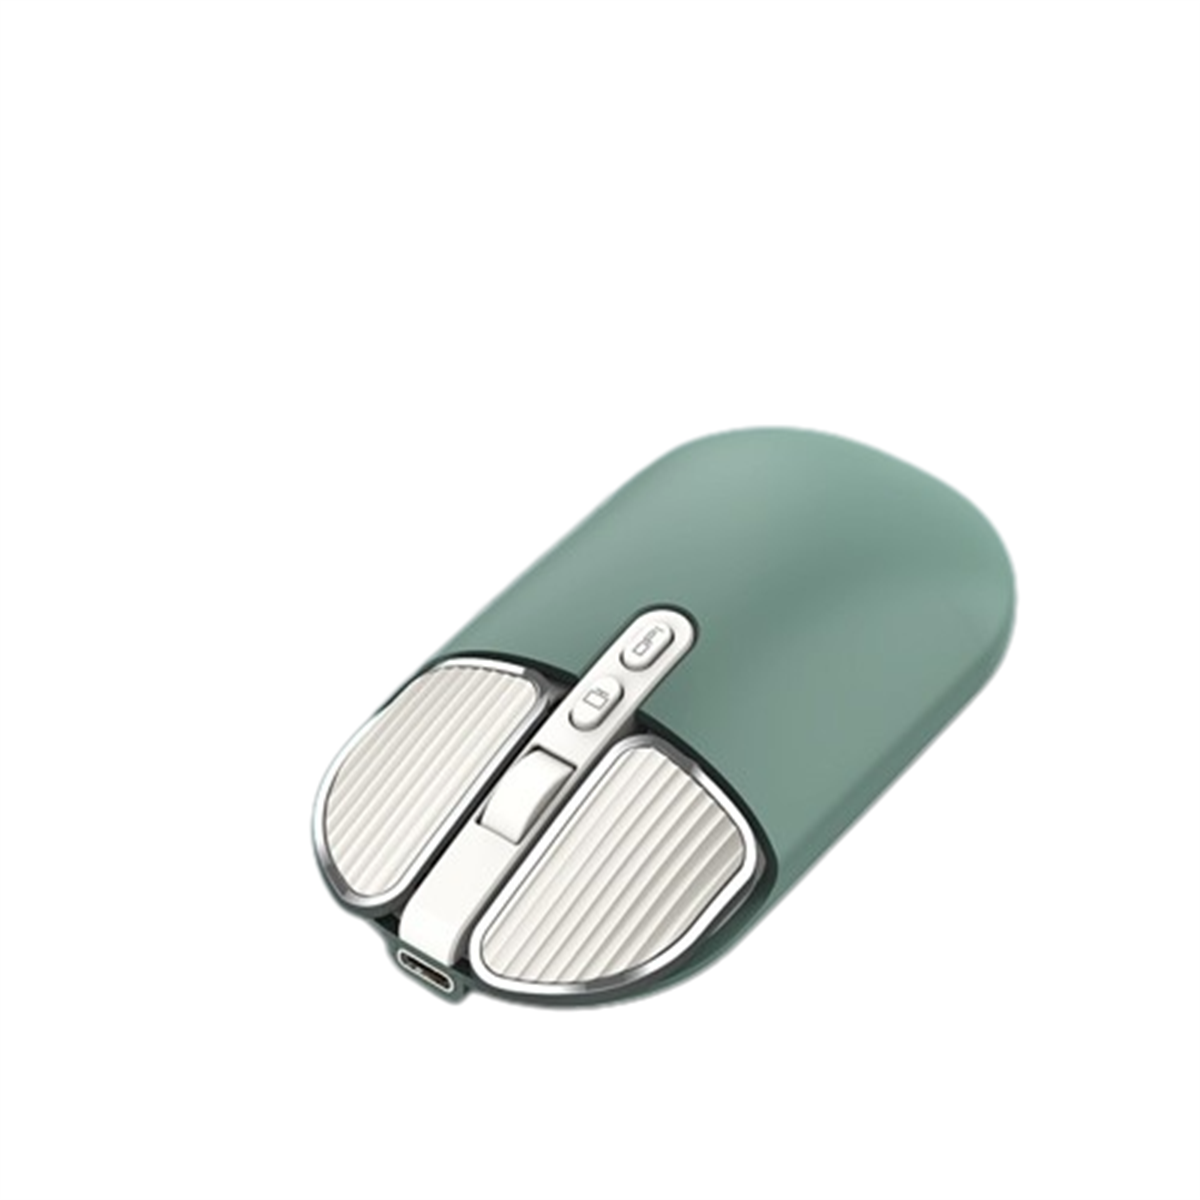 SYNTEK M203 Wireless Mouse grün präzise - Dual-Mode-Verbindung, Positionierung Maus